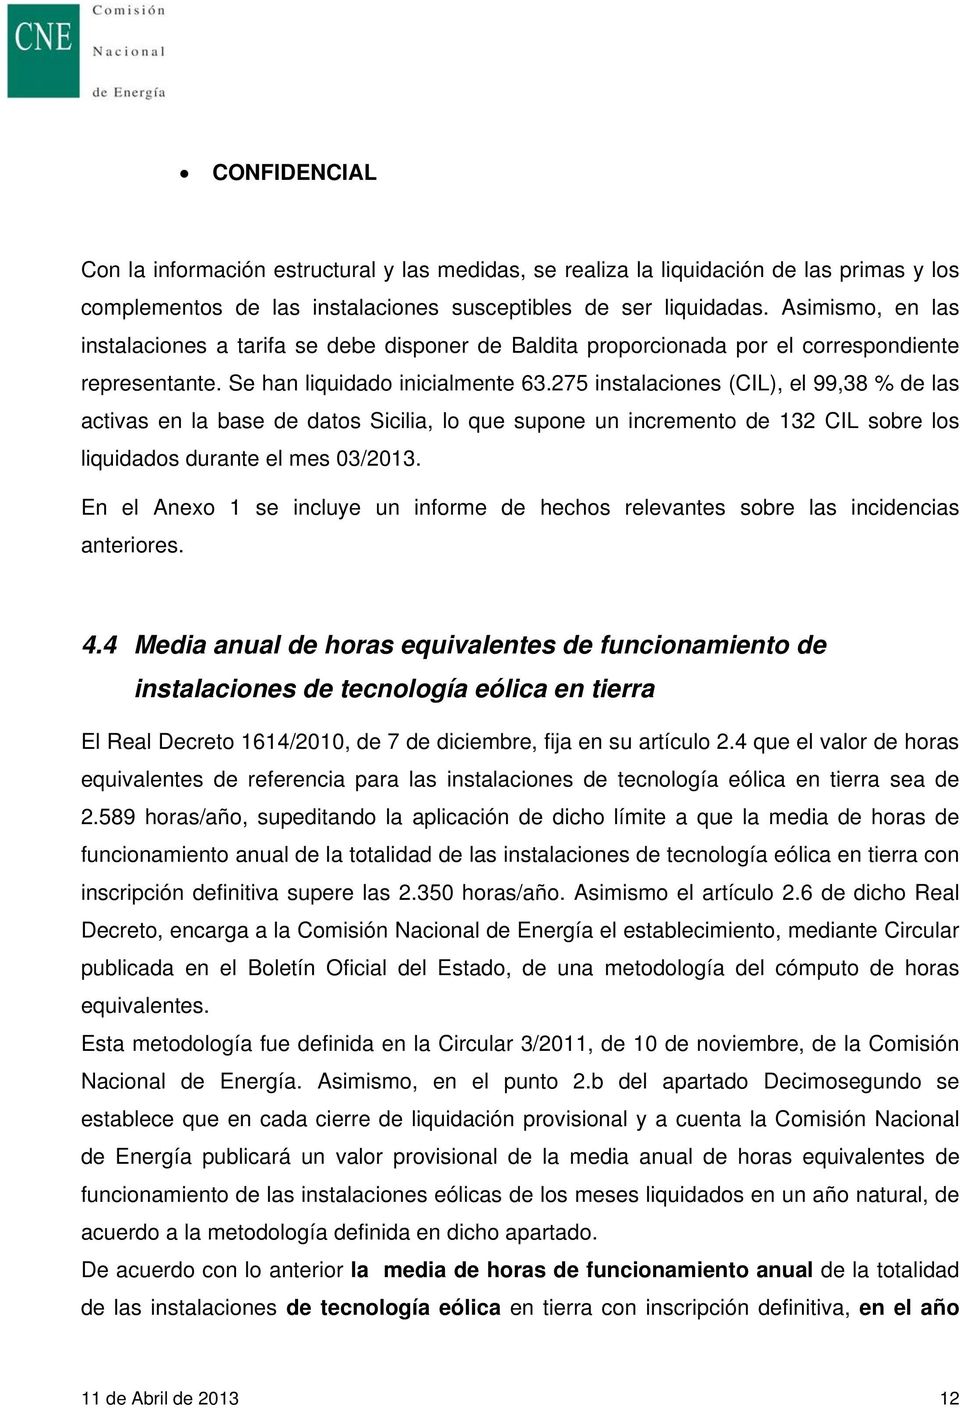 275 instalaciones (CIL), el 99,38 % de las activas en la base de datos Sicilia, lo que supone un incremento de 132 CIL sobre los liquidados durante el mes 03/2013.